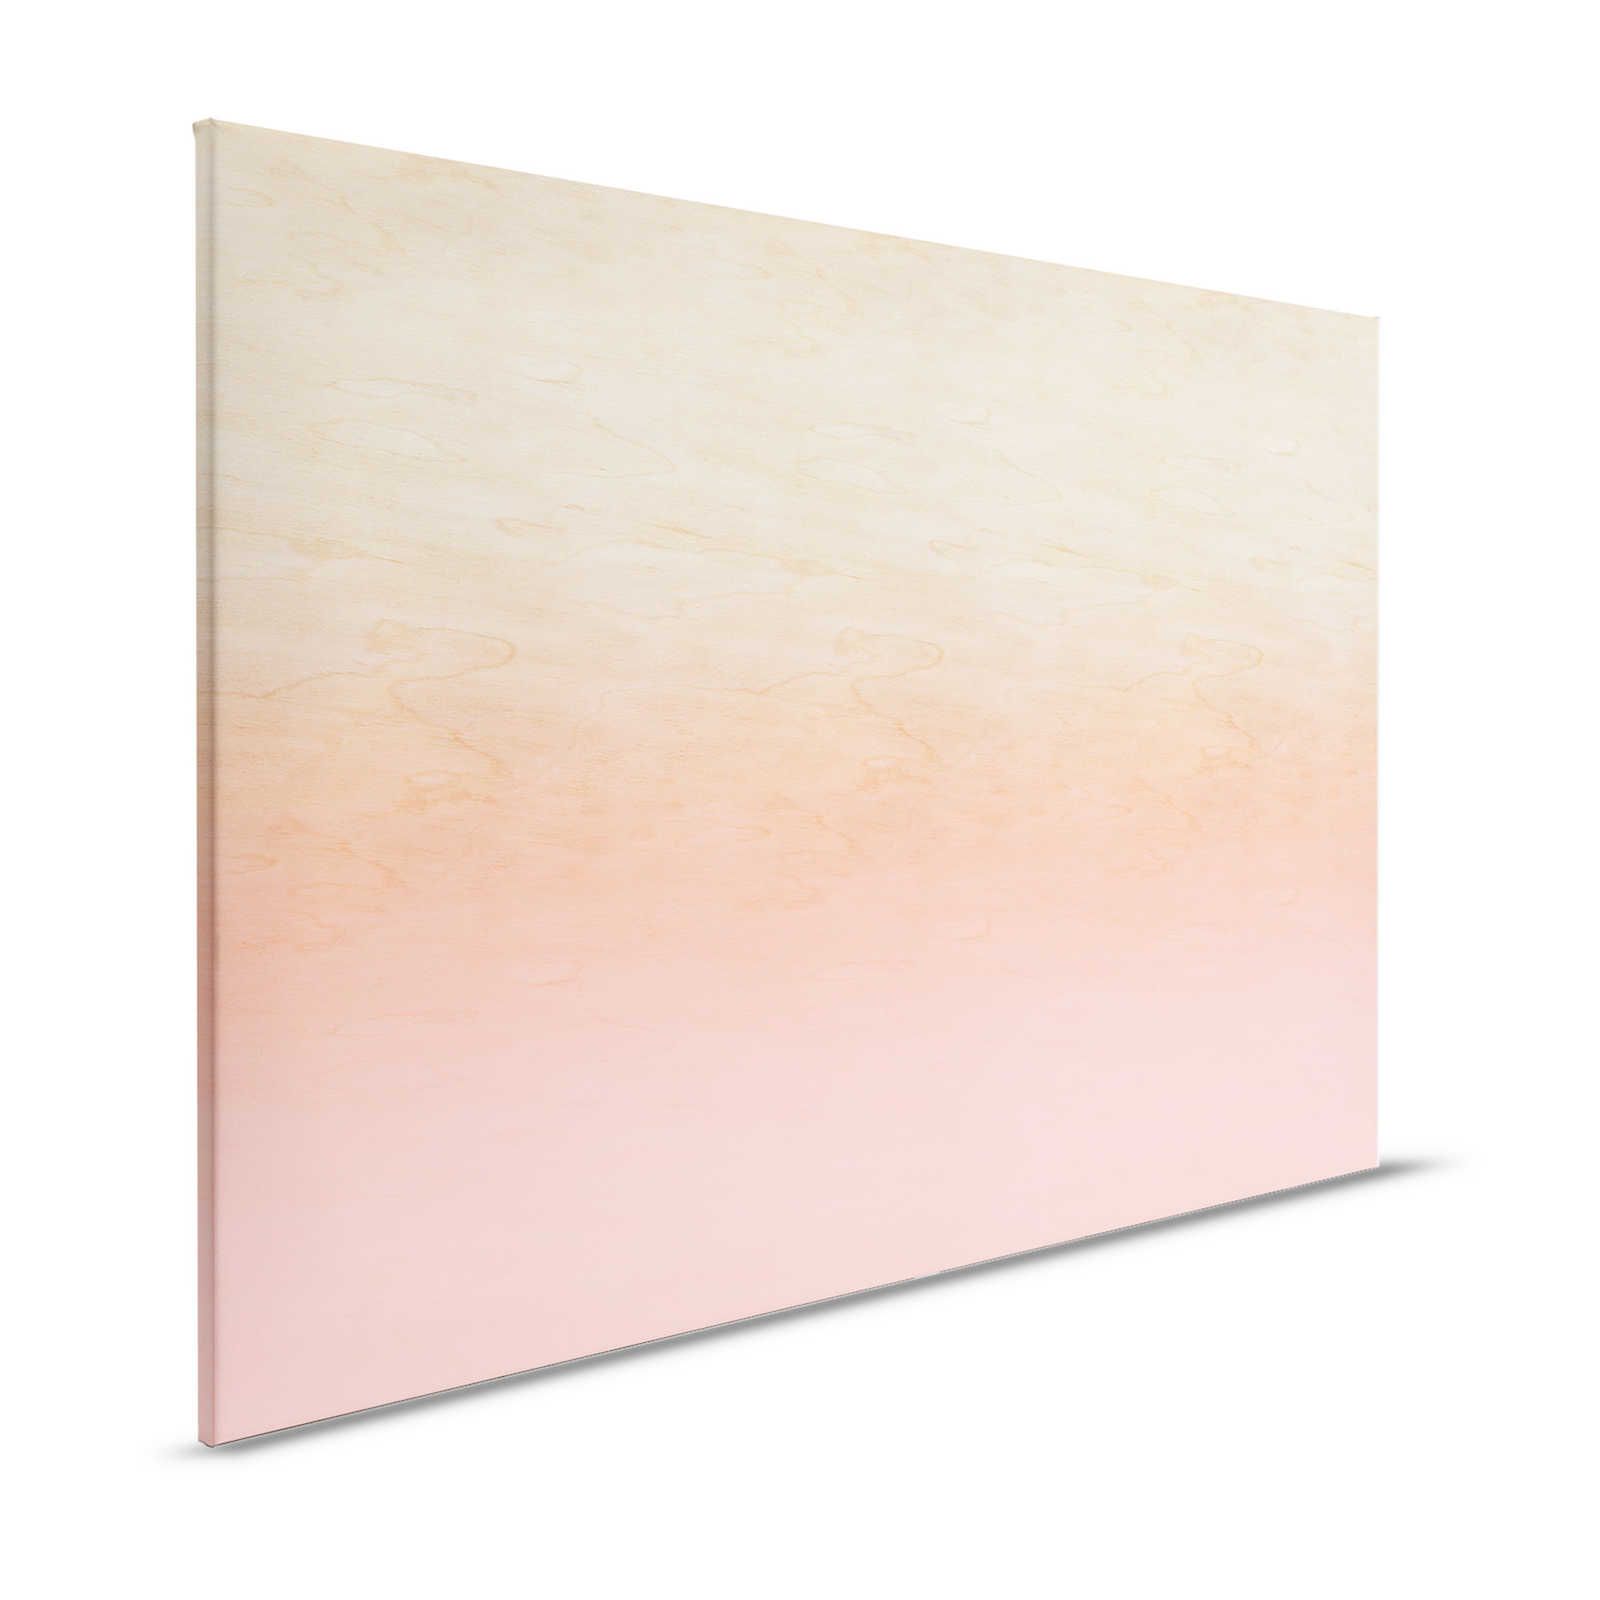 Taller 2 - Pintura sobre lienzo Efecto Ombre Rosa y Grano de Madera - 1,20 m x 0,80 m
